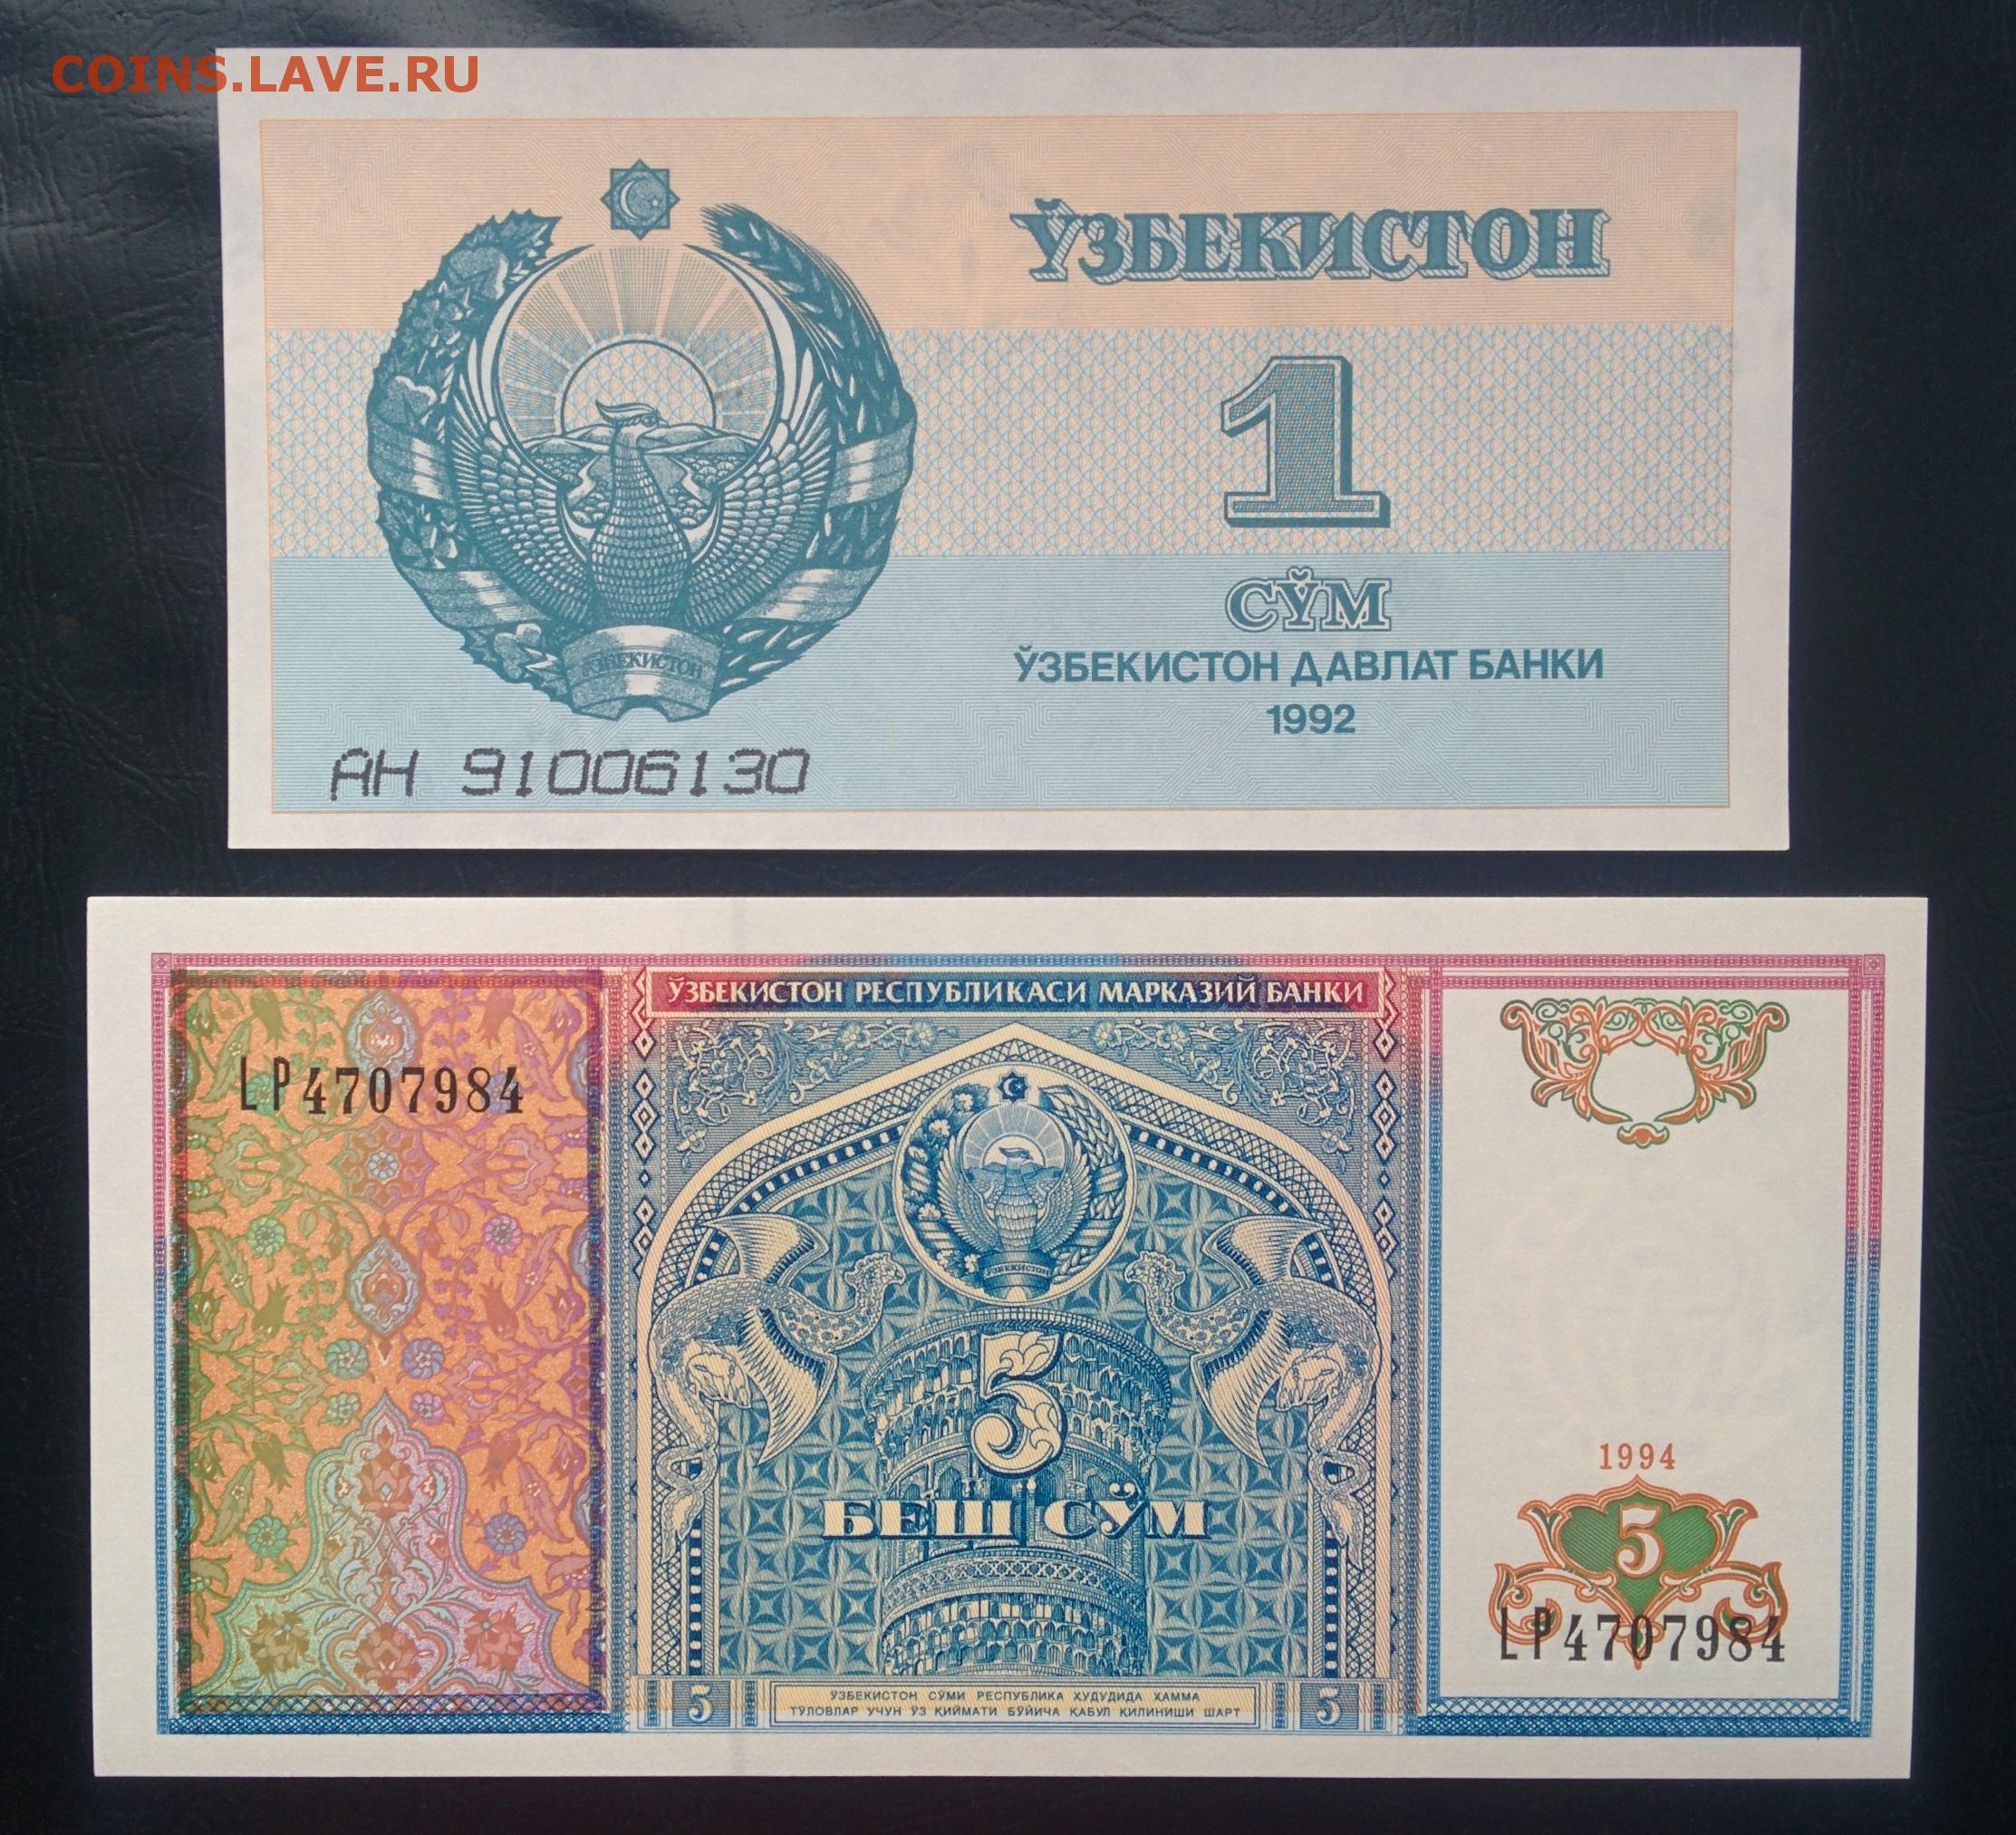 50000 рублей в сумах узбекских на сегодня. Узбекистан 1 сум 1994 г. UNC. Узбекский сум 1994 года. Узбекистанские 5 сум в рублях.